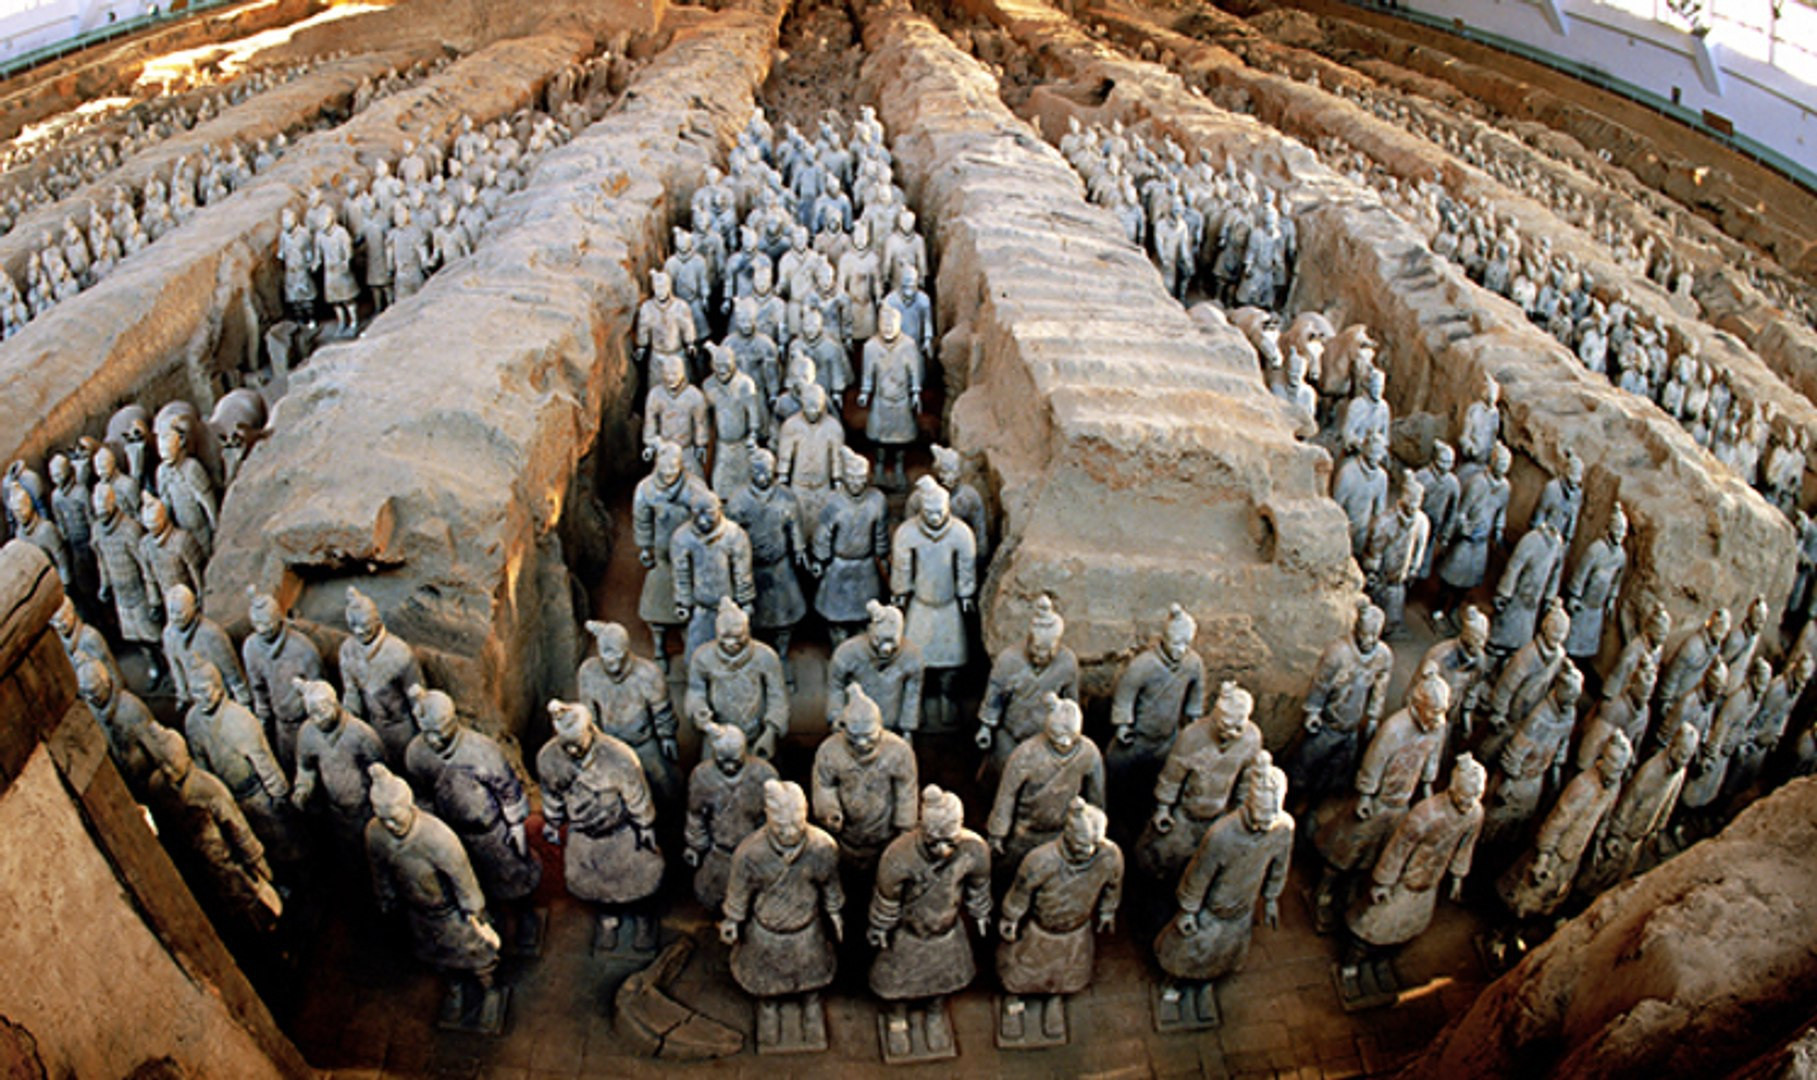 Bí ẩn ngọn đèn cháy sáng nghìn năm trong lăng mộ Tần Thủy Hoàng - 2